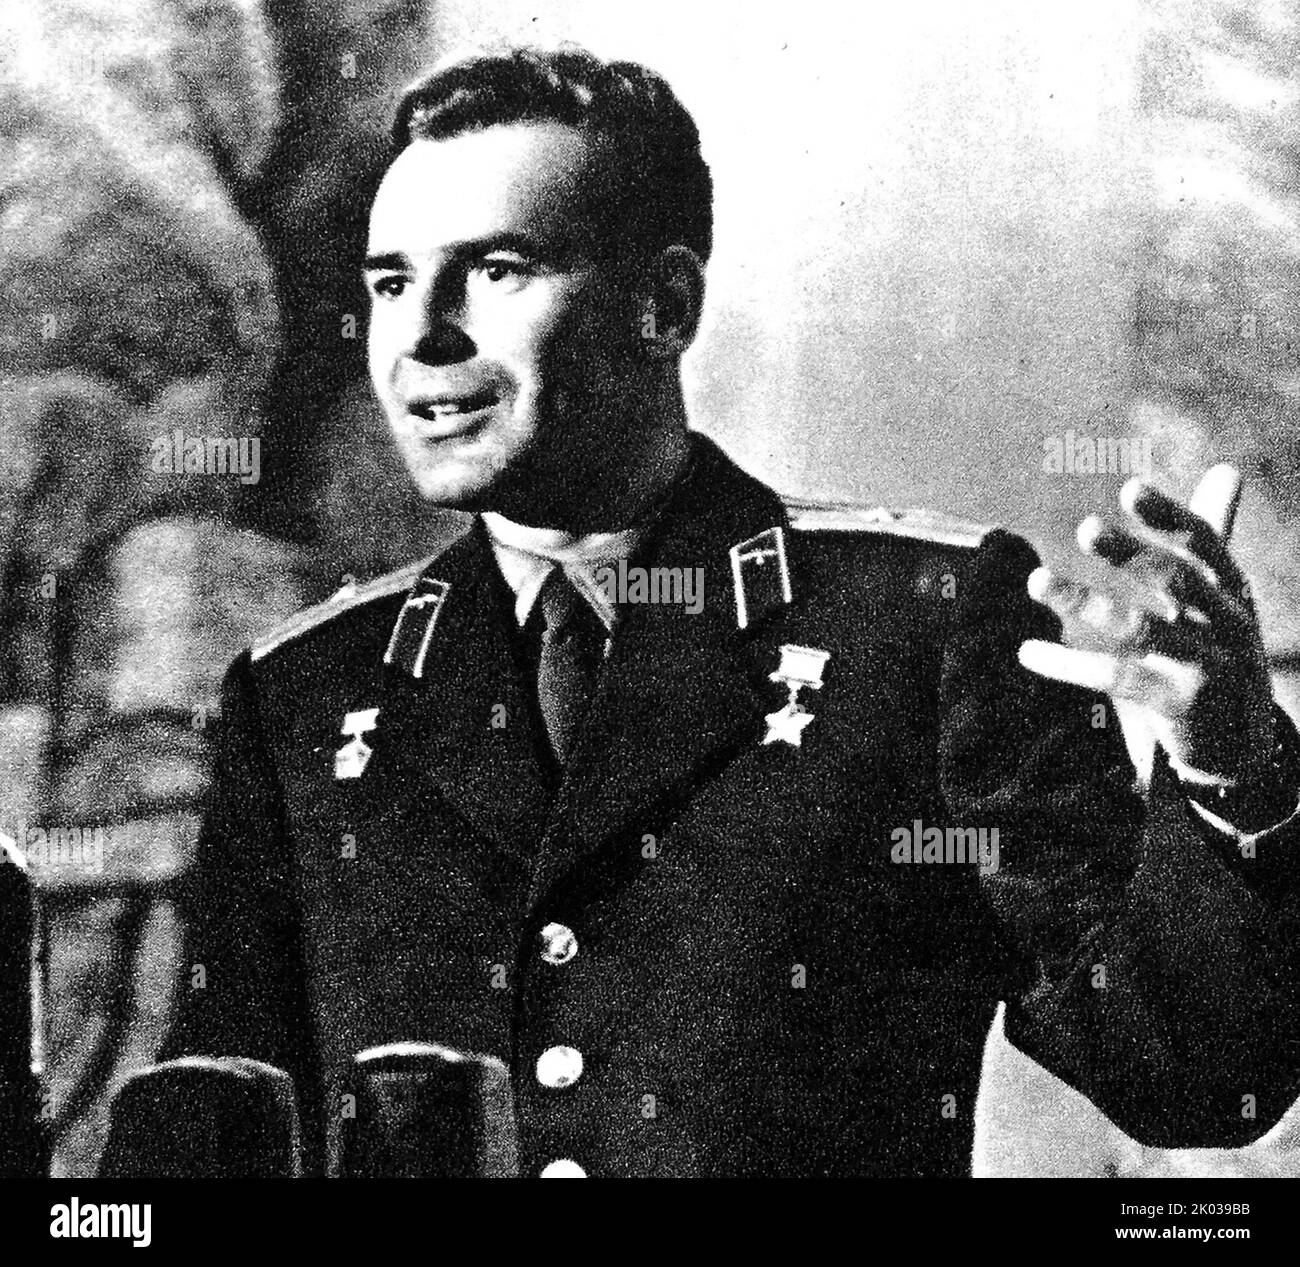 Gherman Stepanovich Titov (1935 - 2000) sowjetischer Kosmonaut, der am 6. August 1961 als zweiter Mensch die Erde umkreiste, an Bord von Wostok 2, dem Juri Gagarin auf Wostok 1 vorausgegangen war. Stockfoto